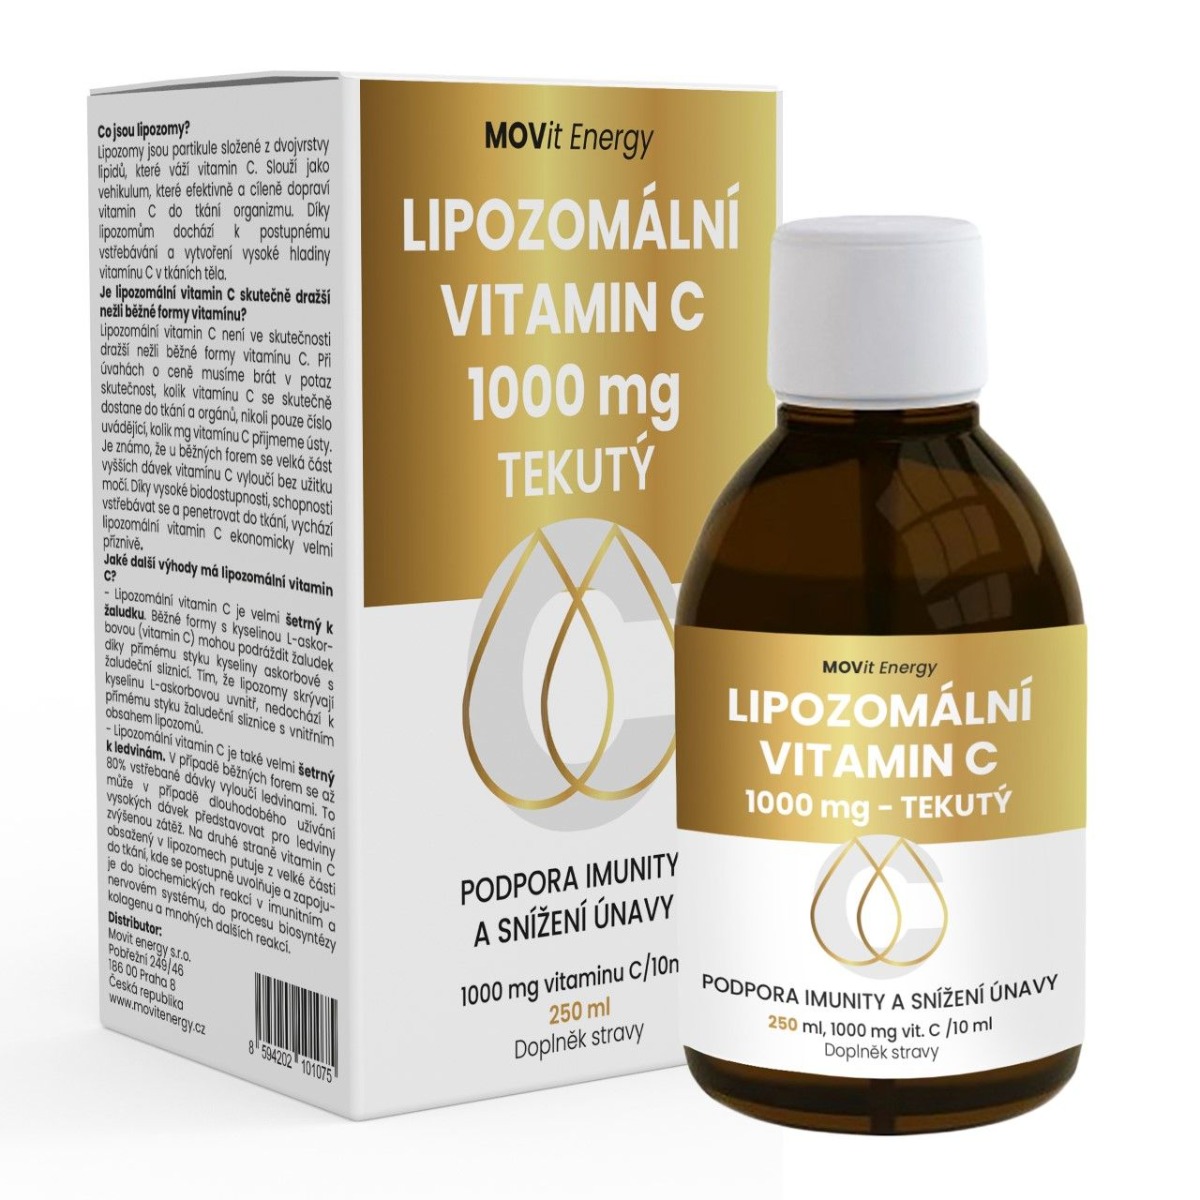 MOVit Energy Lipozomální Vitamin C 1000 mg tekutý 250 ml MOVit Energy